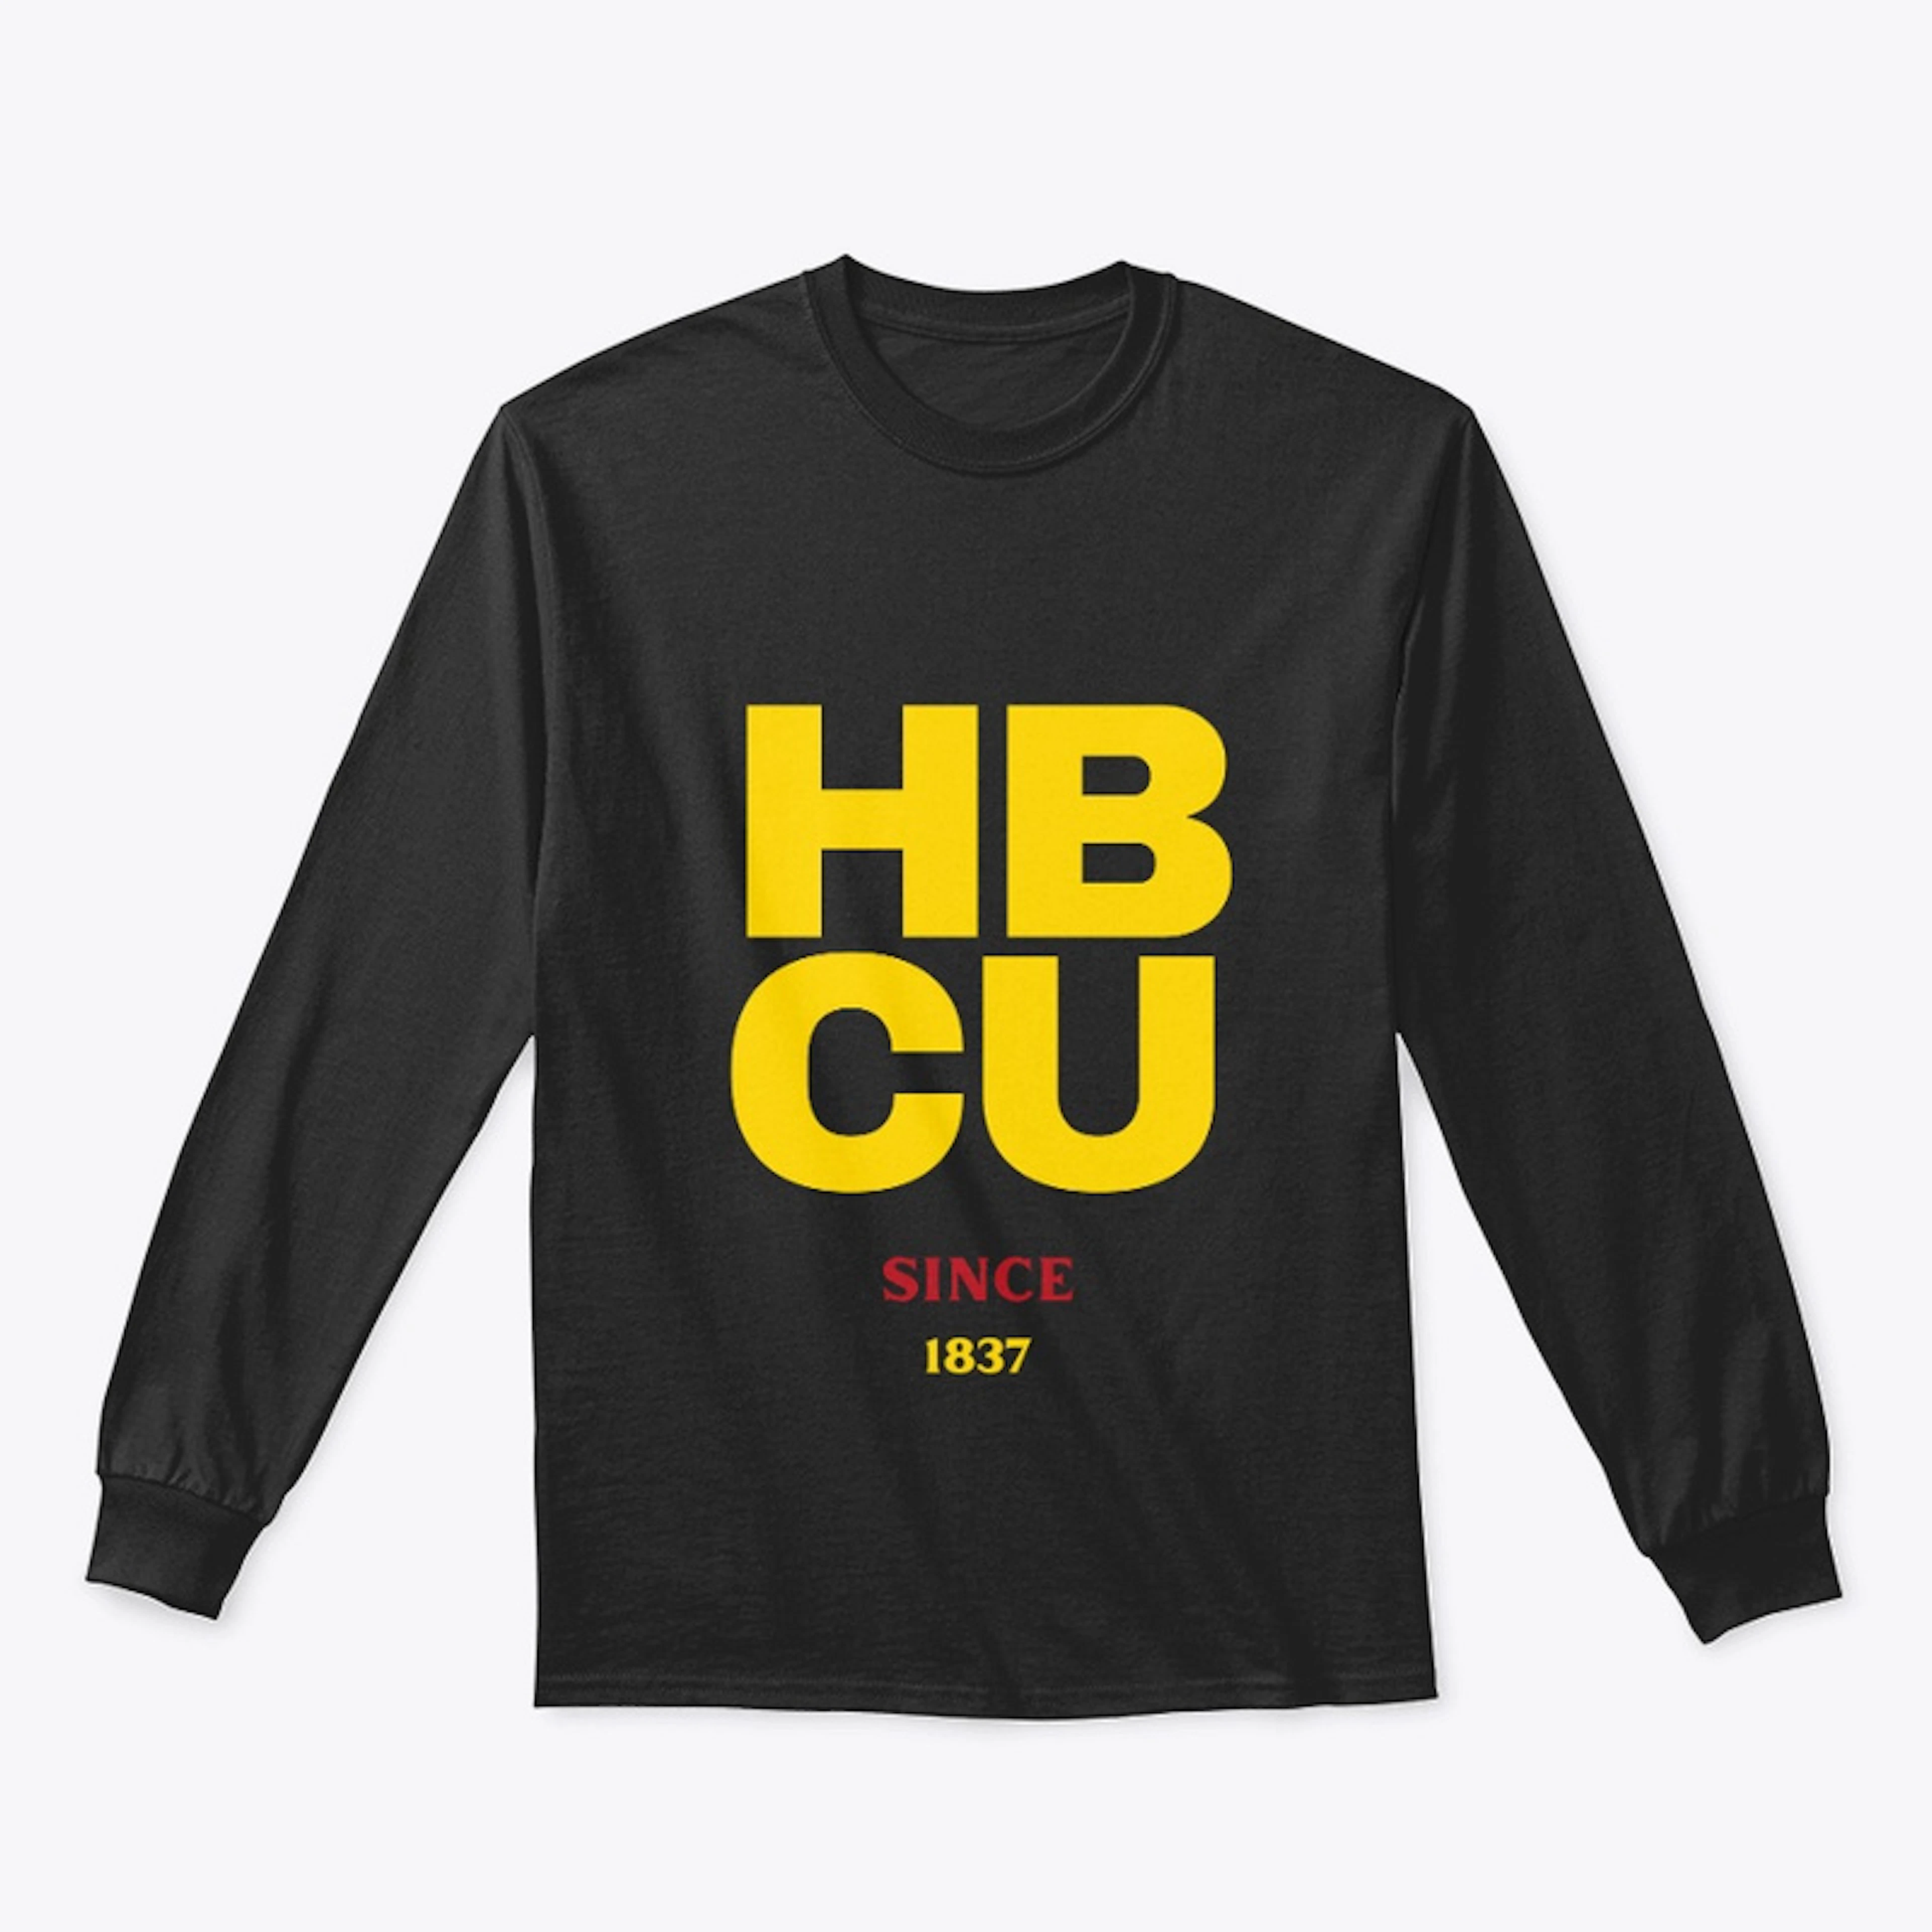 HBCU: Since 1837